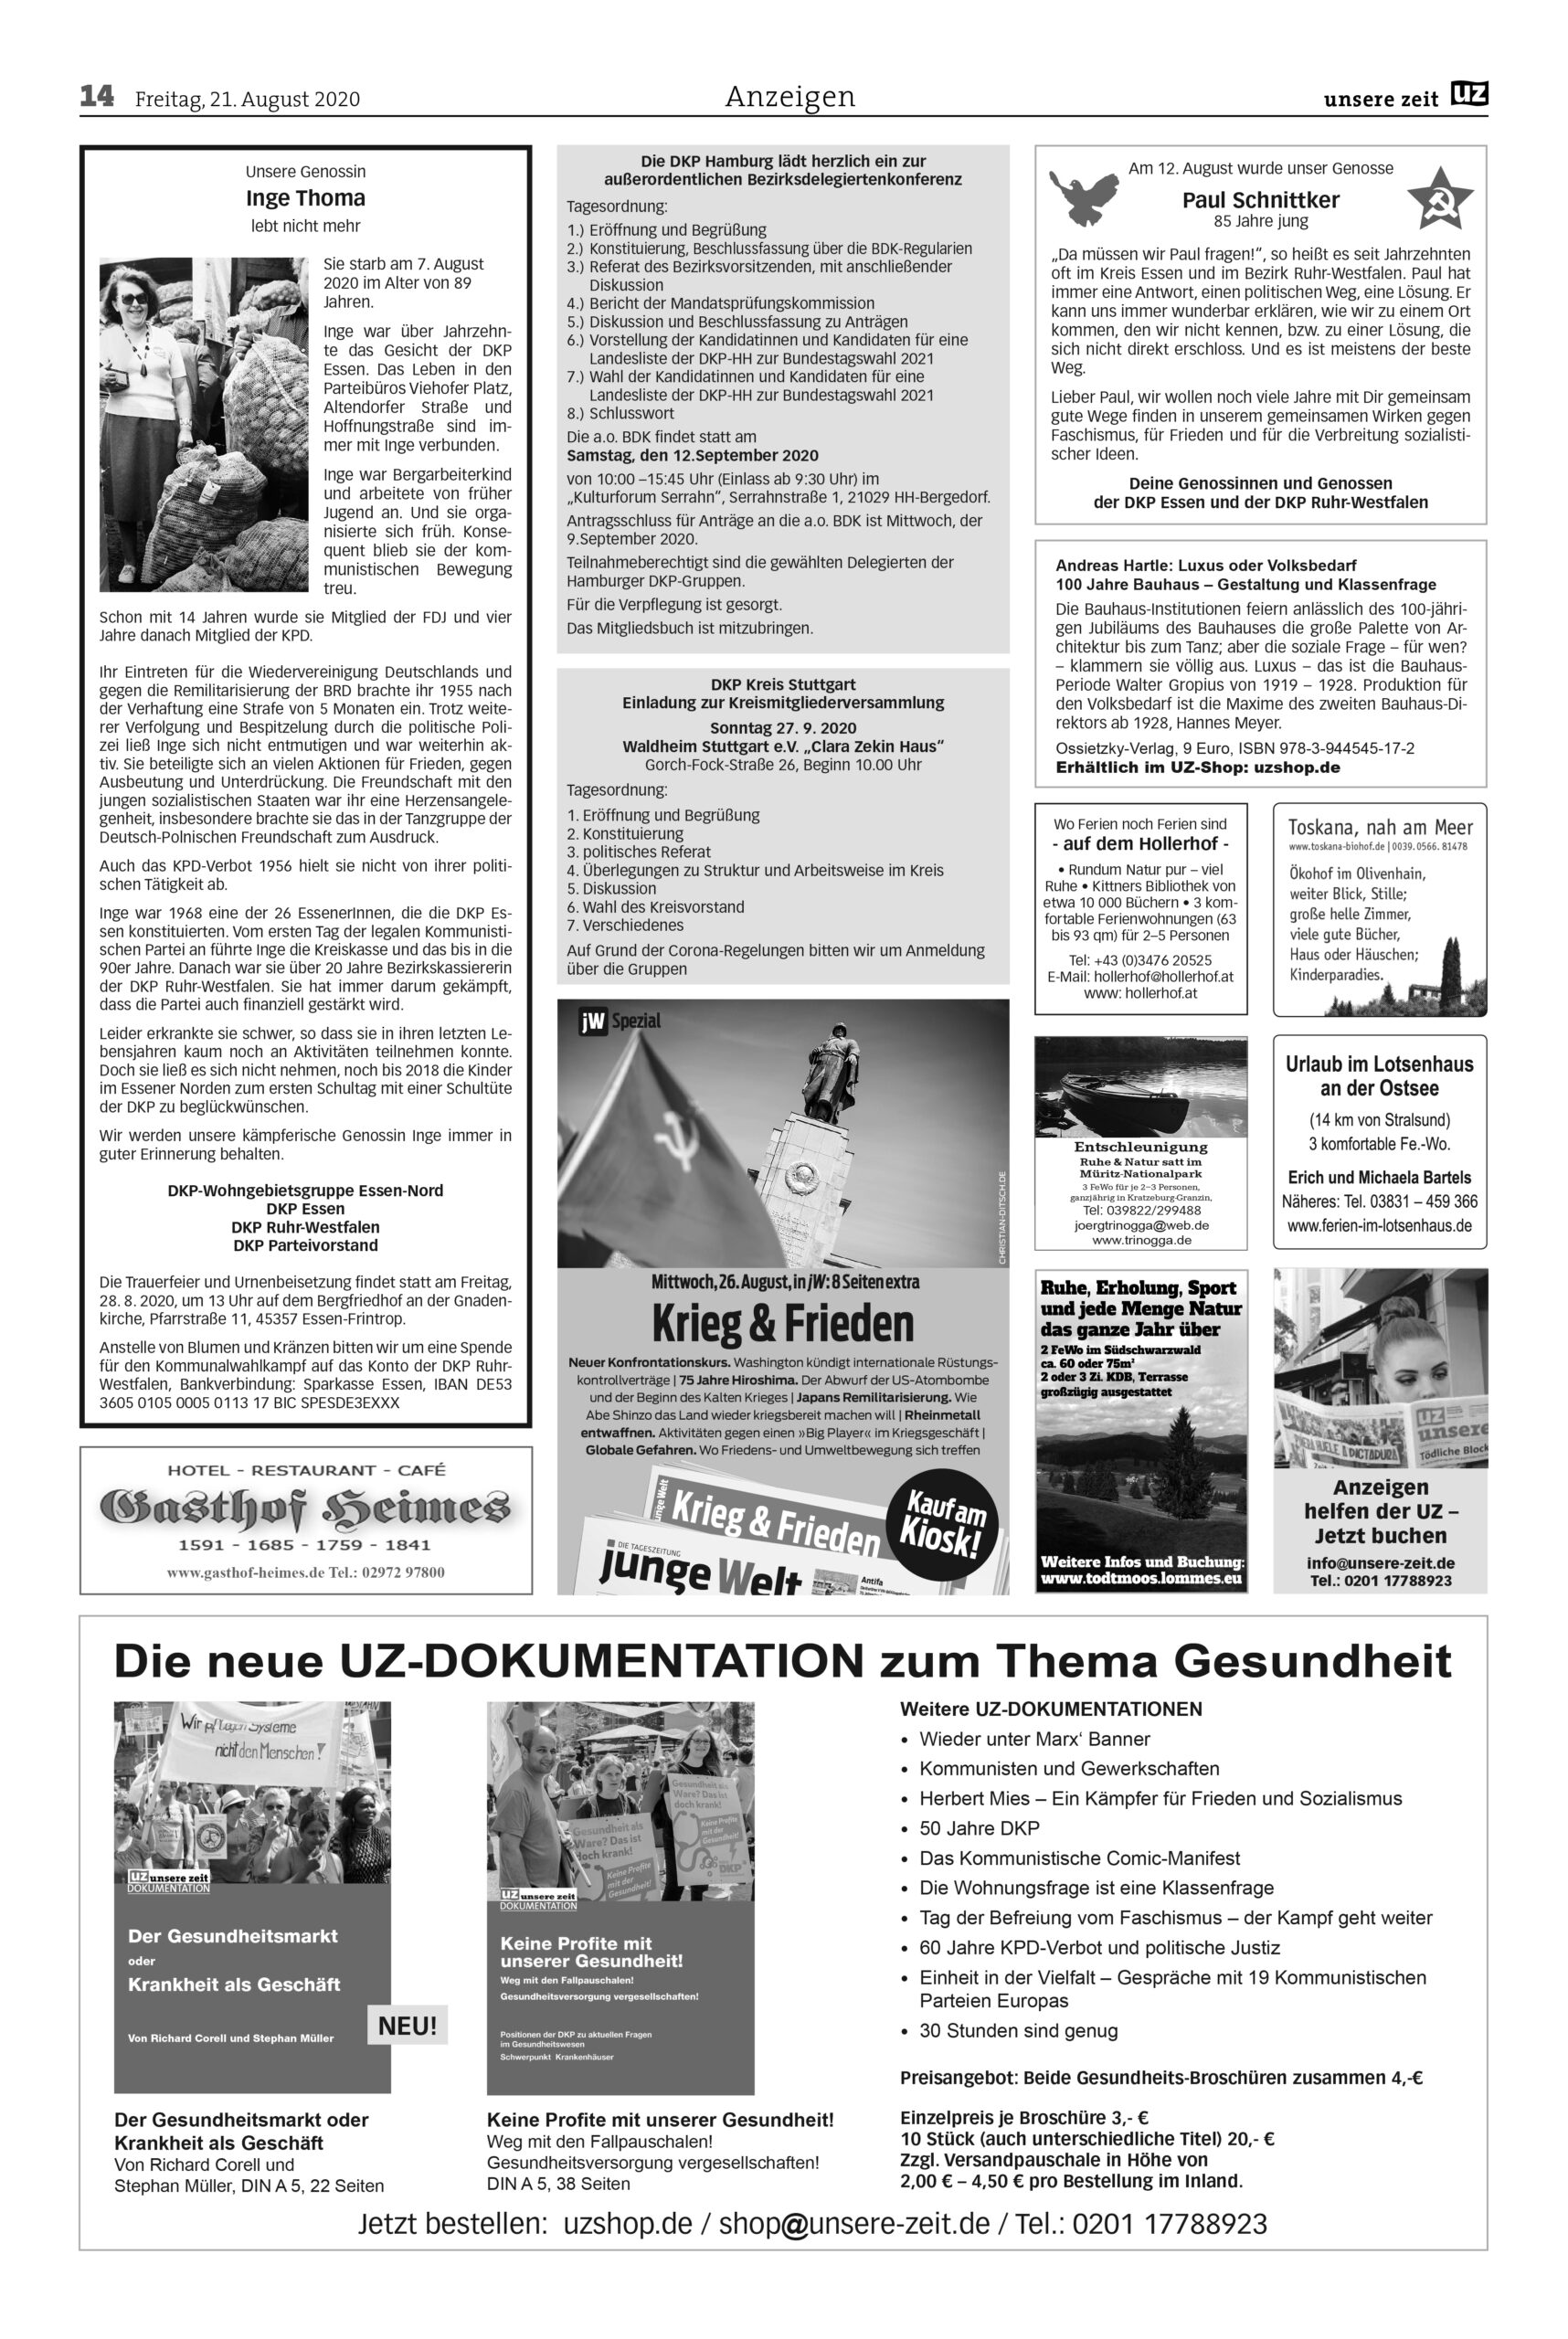 UZ 34 14 scaled - Anzeigen 2020-34 - Anzeigen - Anzeigen